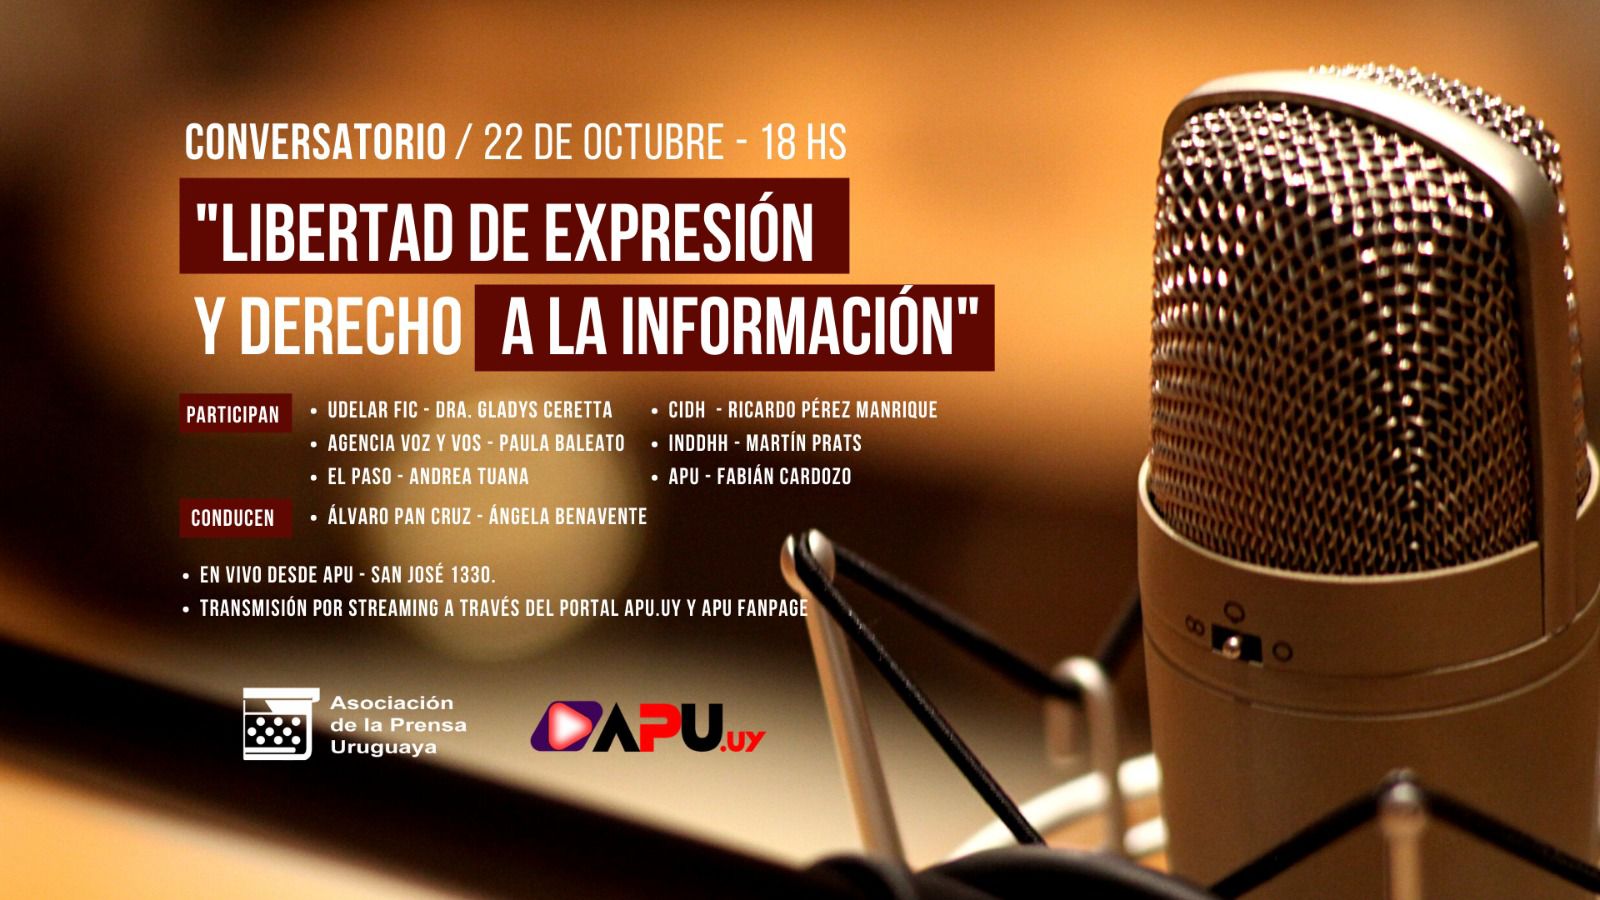 Uruguay: La Asociación de la Prensa Uruguaya lanza actividades por el Día de lxs Periodistas y lxs Trabajadorxs de los medios de comunicación